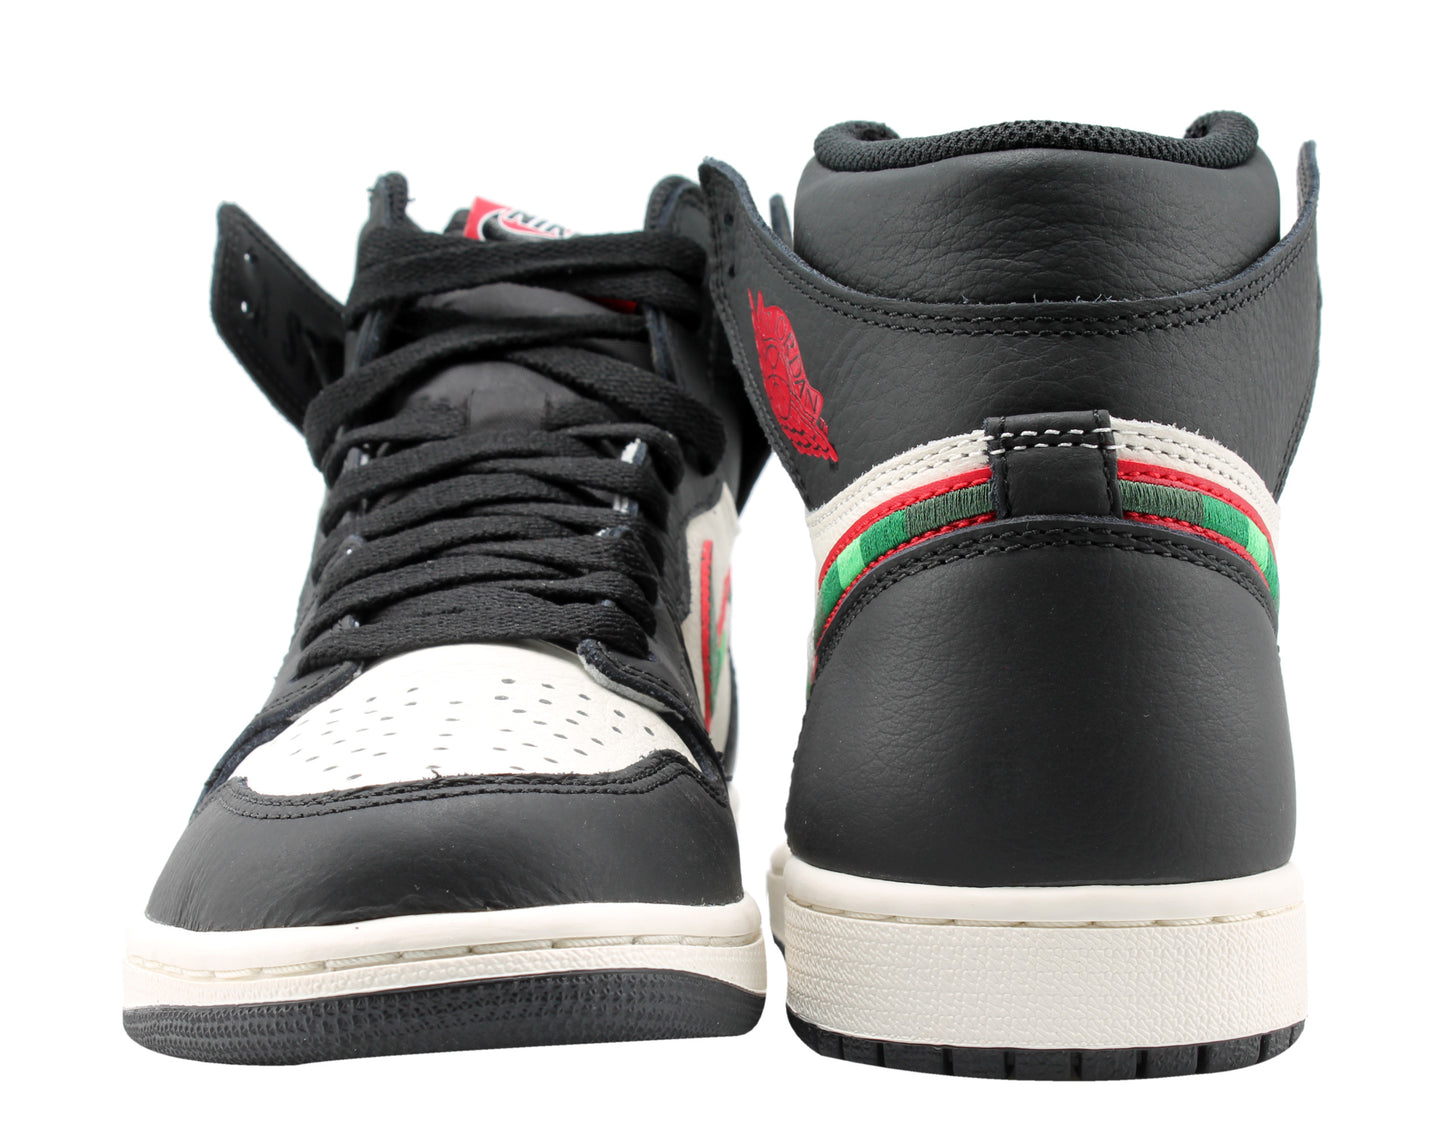 Nike Air Jordan 1 Retro High A Star Is Born Men's Basketball Shoes 555088-015